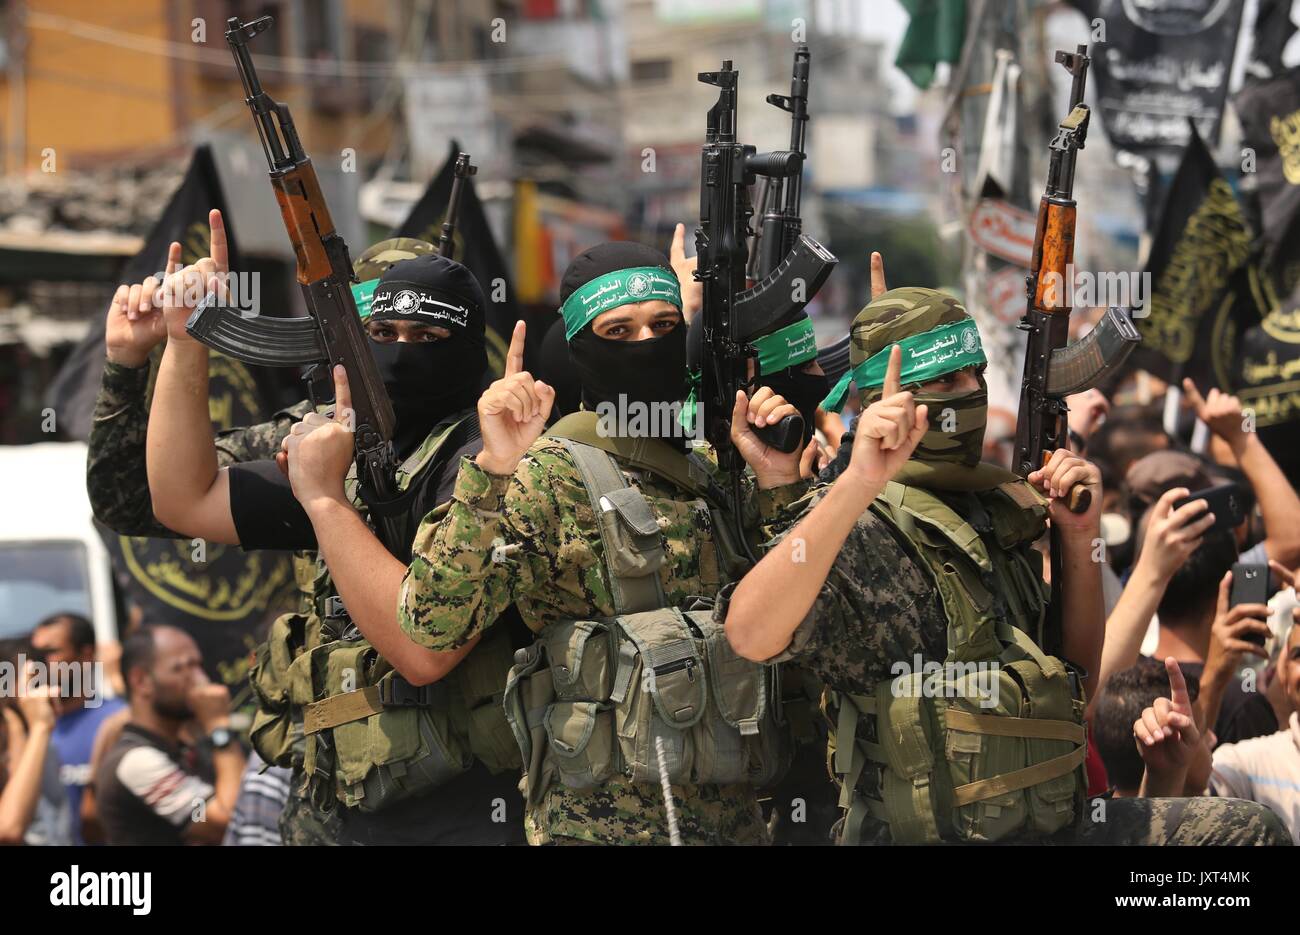 4 террористические организации. Аль-Каида ХАМАС. Палестинский ХАМАС. Современные террористы. Международные террористы.